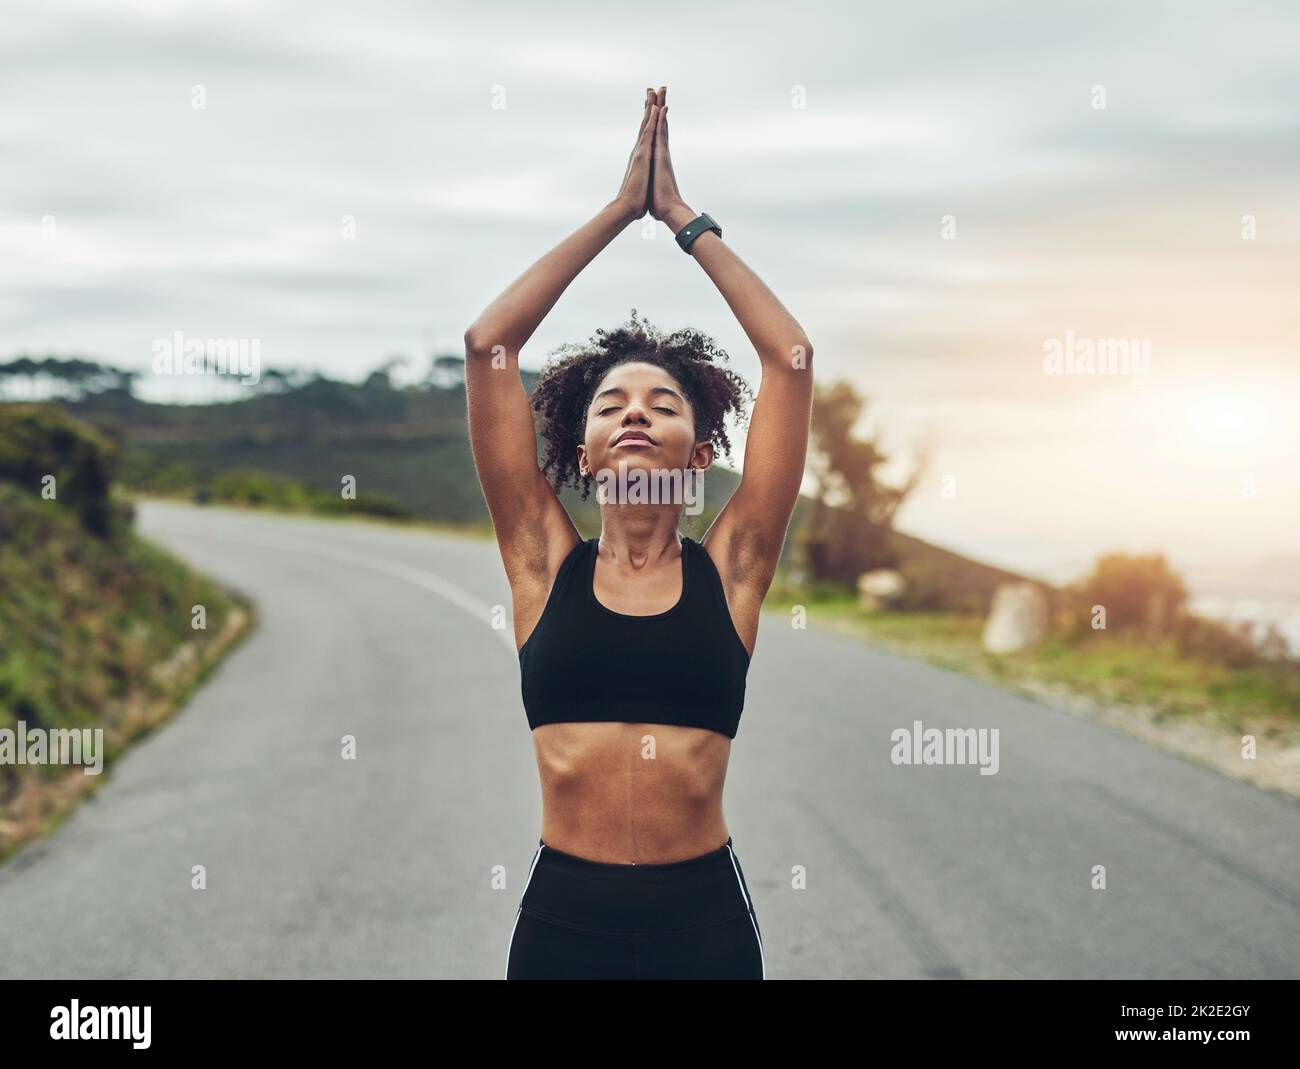 Trouver l'équilibre. Photo courte d'une jeune sportswoman attirante méditant pendant son entraînement en plein air. Banque D'Images